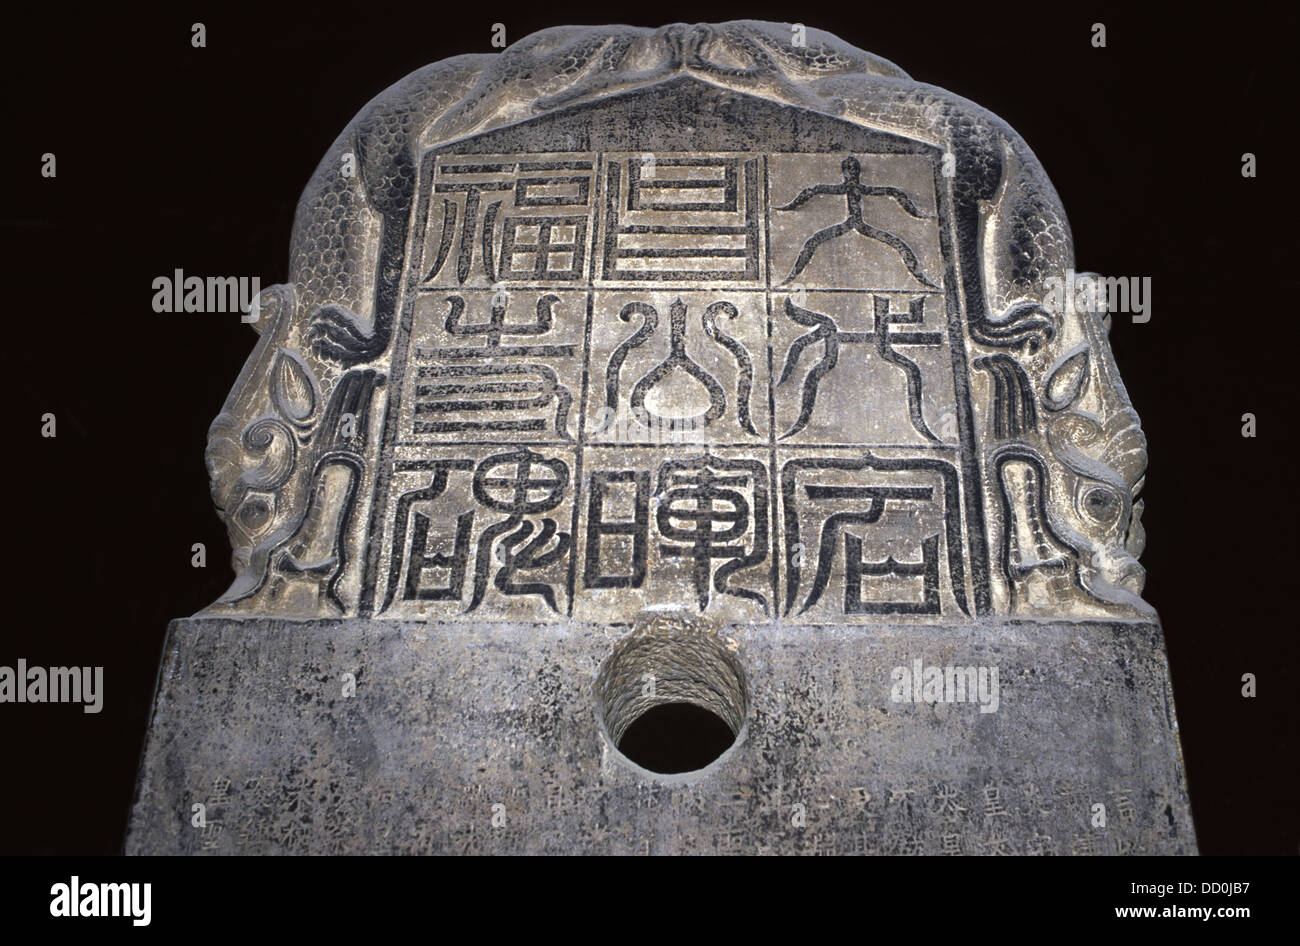 Détail de la tablette Nestorienne avec la calligraphie chinoise ancienne de la dynastie Tang exposée à la forêt de Stele, ou le musée Beilin à Xi'an, la capitale de la province de Shaanxi, en Chine Banque D'Images